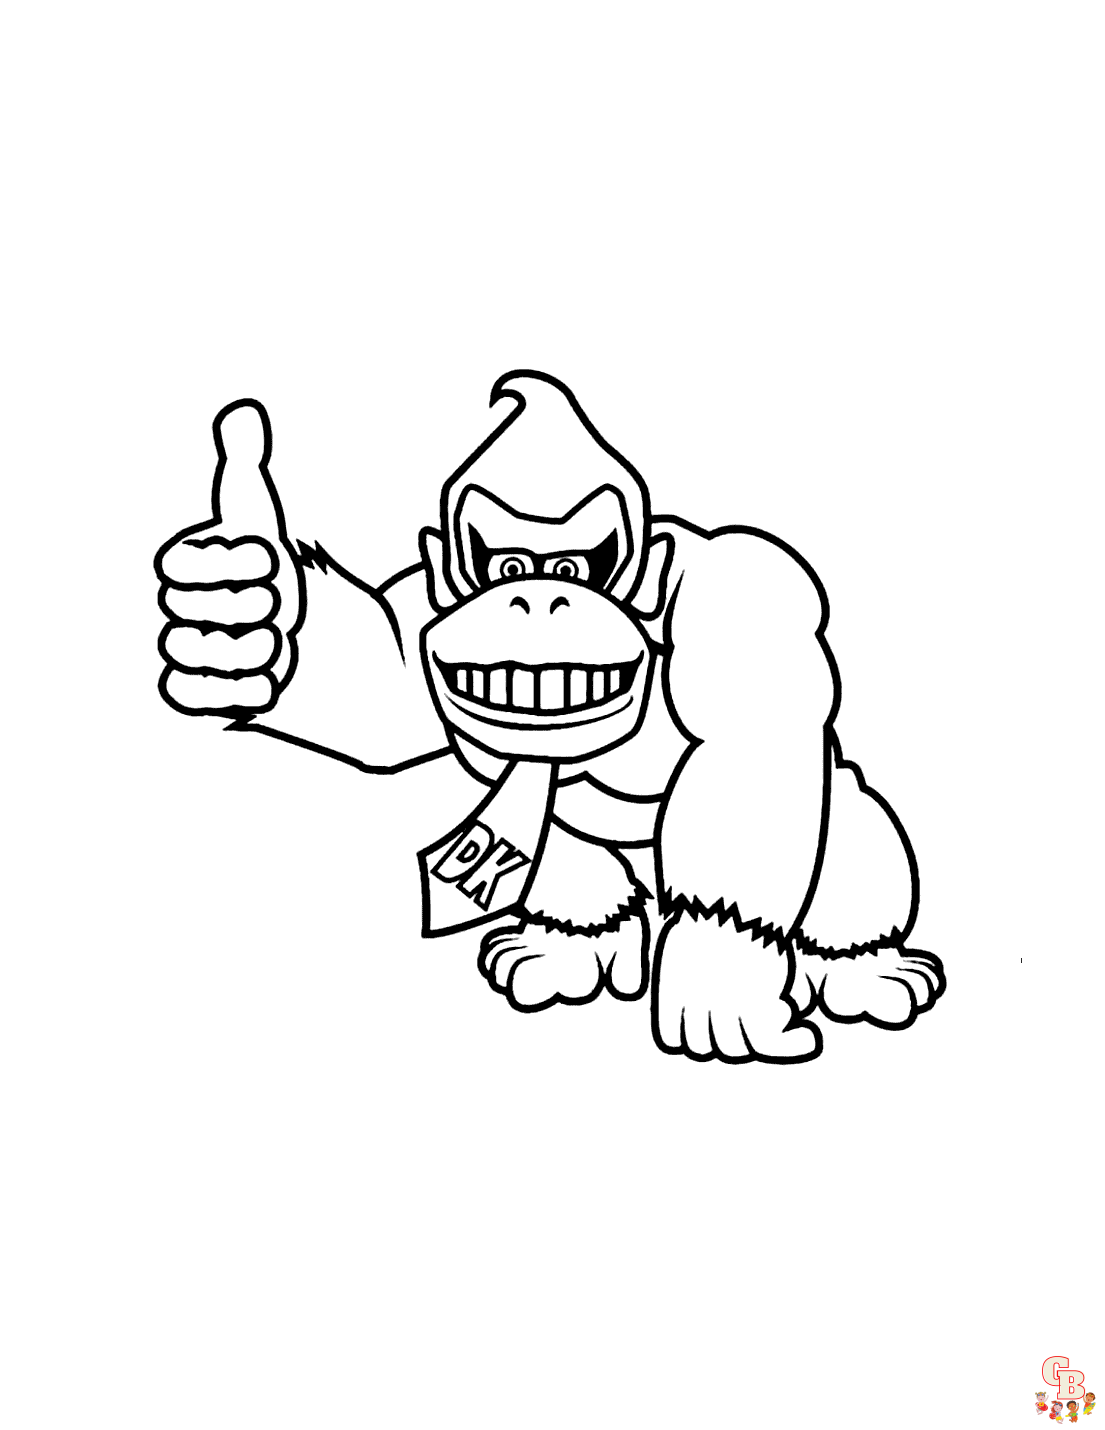 Donkey Kong Coloring Pages - المرح والإبداع مع GBcoloring!